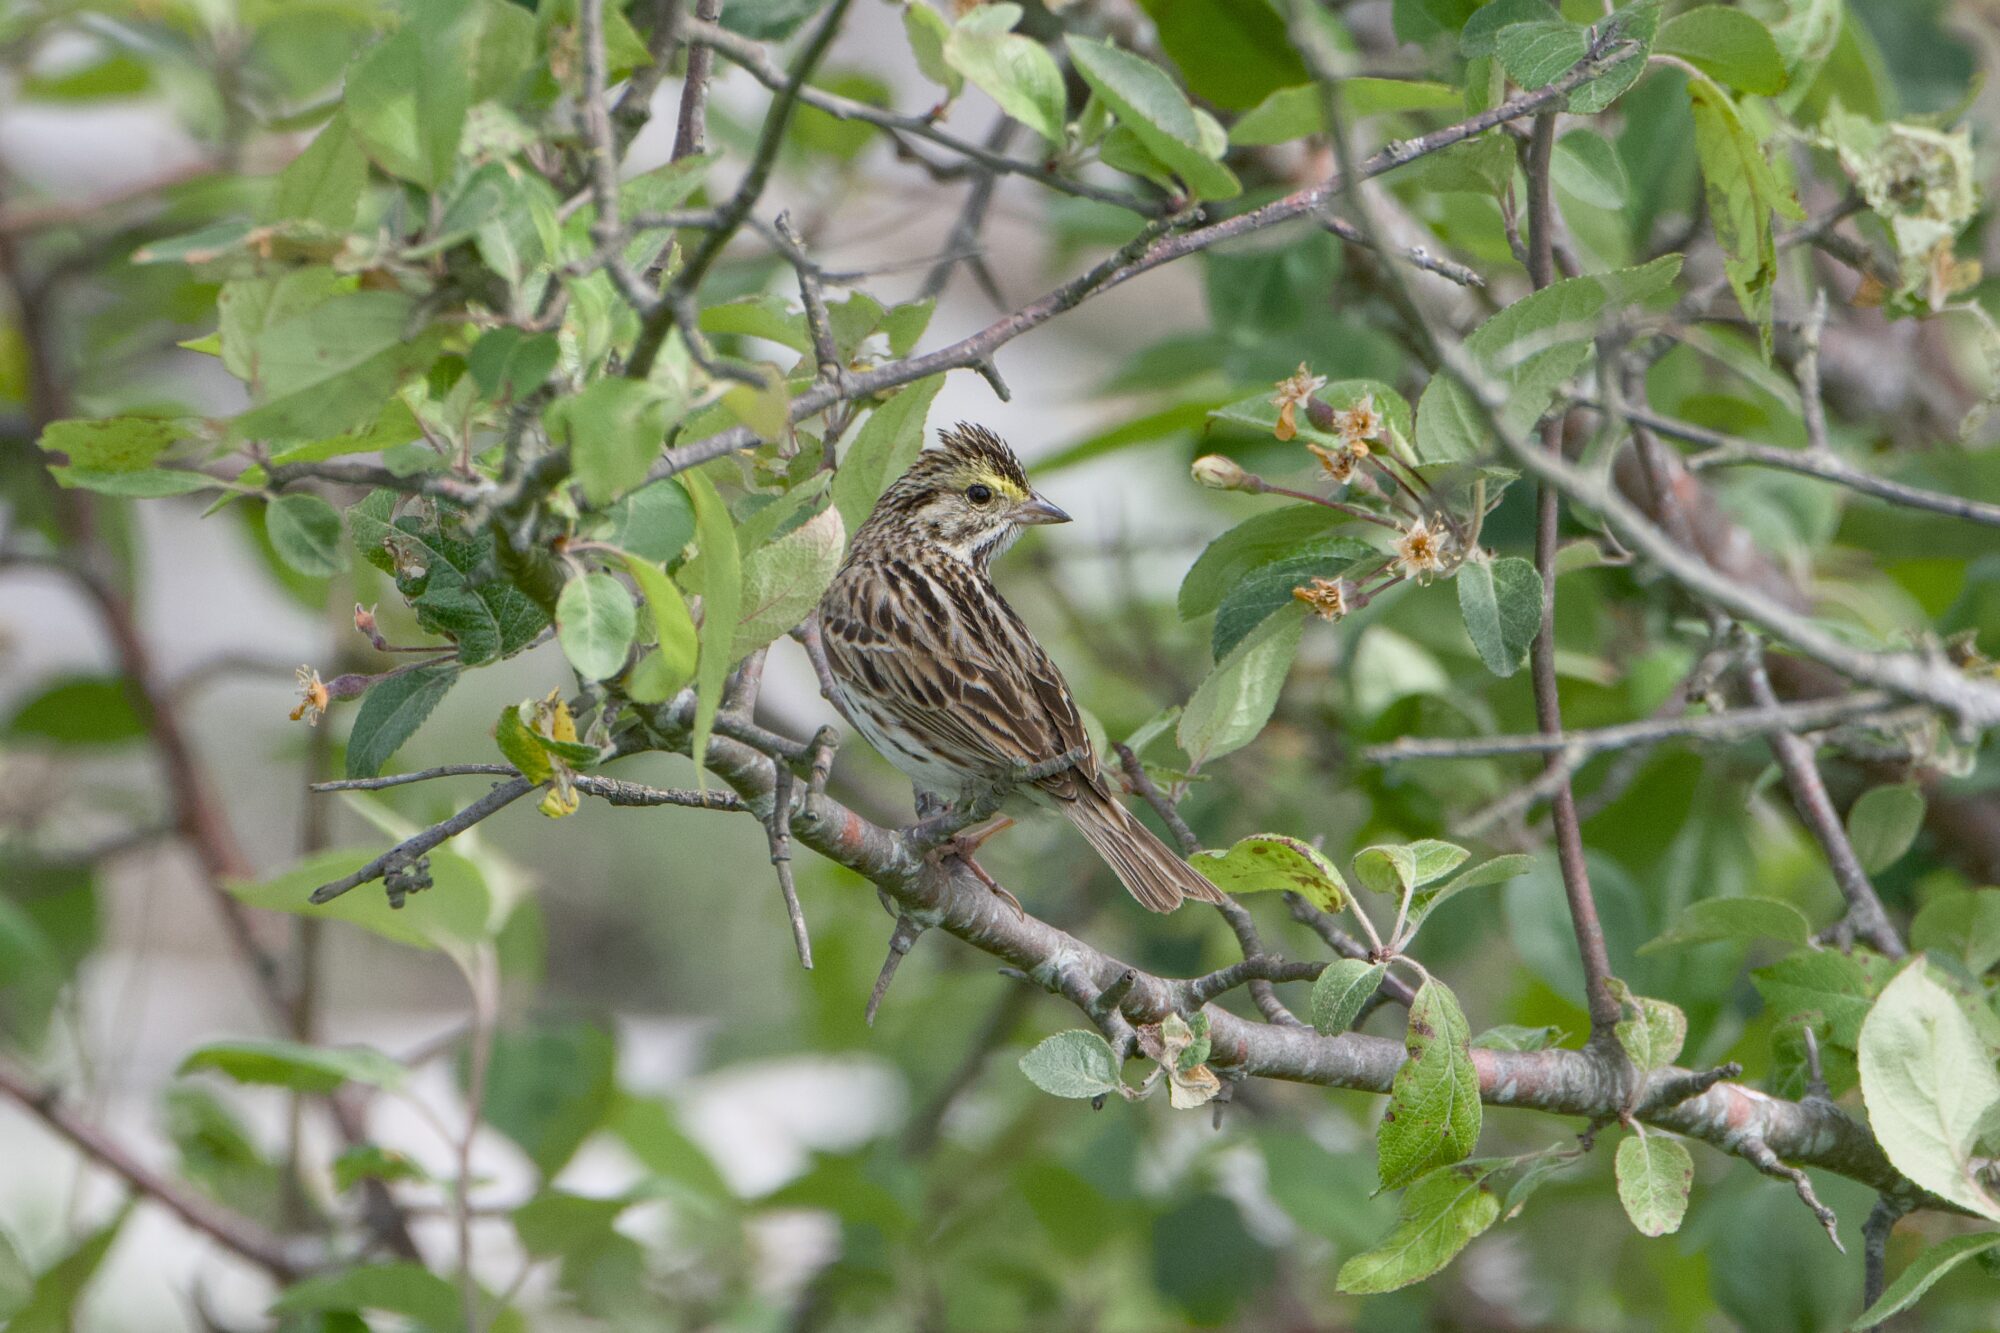 A Savannah Sparrow in a tree